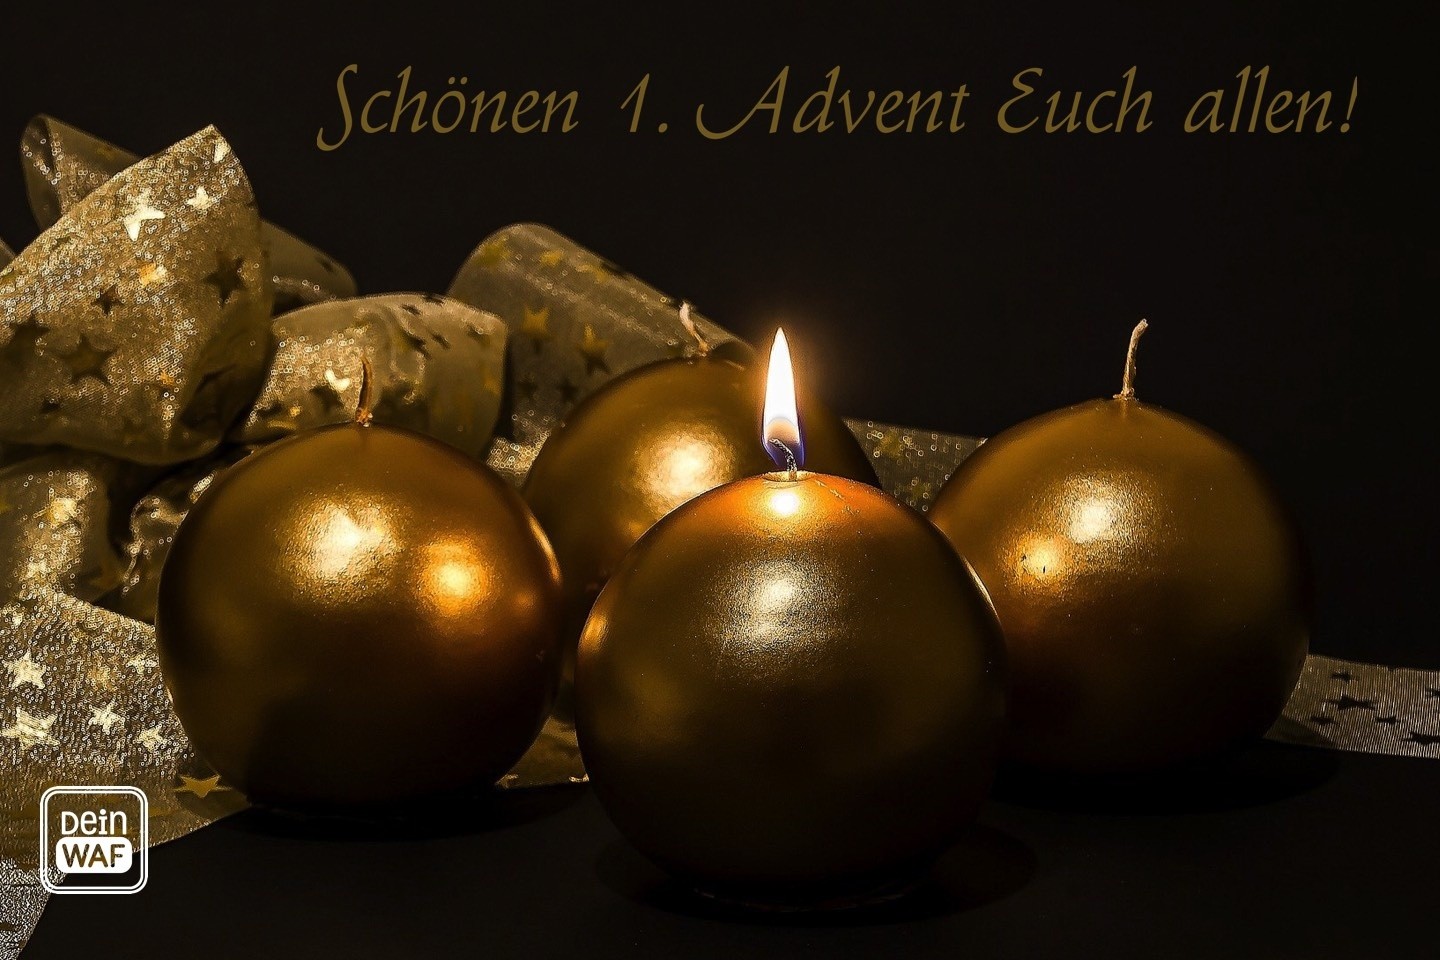 Schönen ersten Advent,Warendorf,DeiN WAF,Advent,Weihnachtszeit,